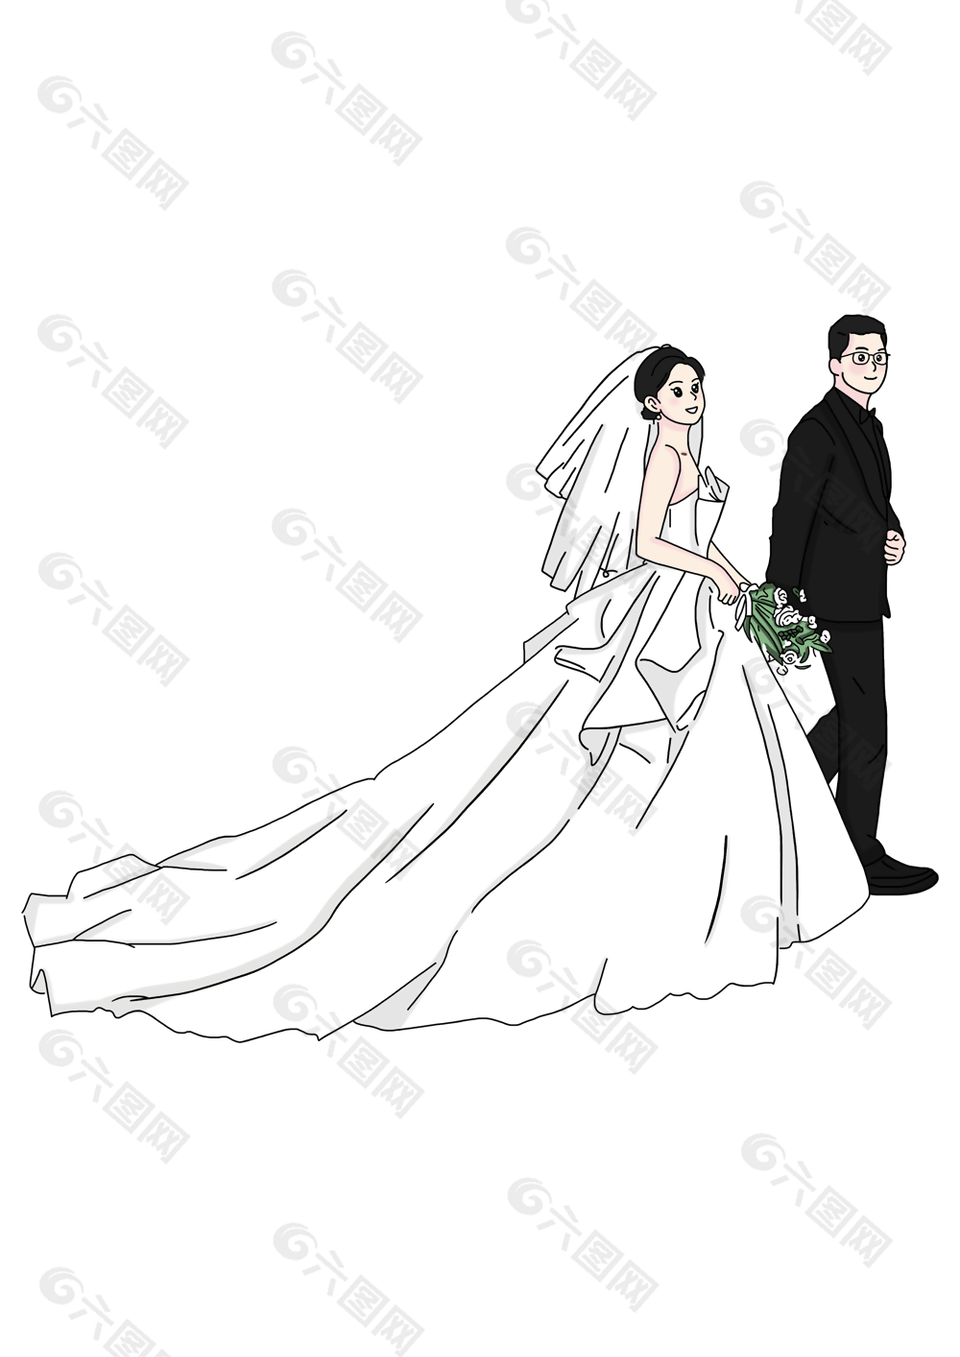 大气简约手绘新郎新娘婚礼插画素材